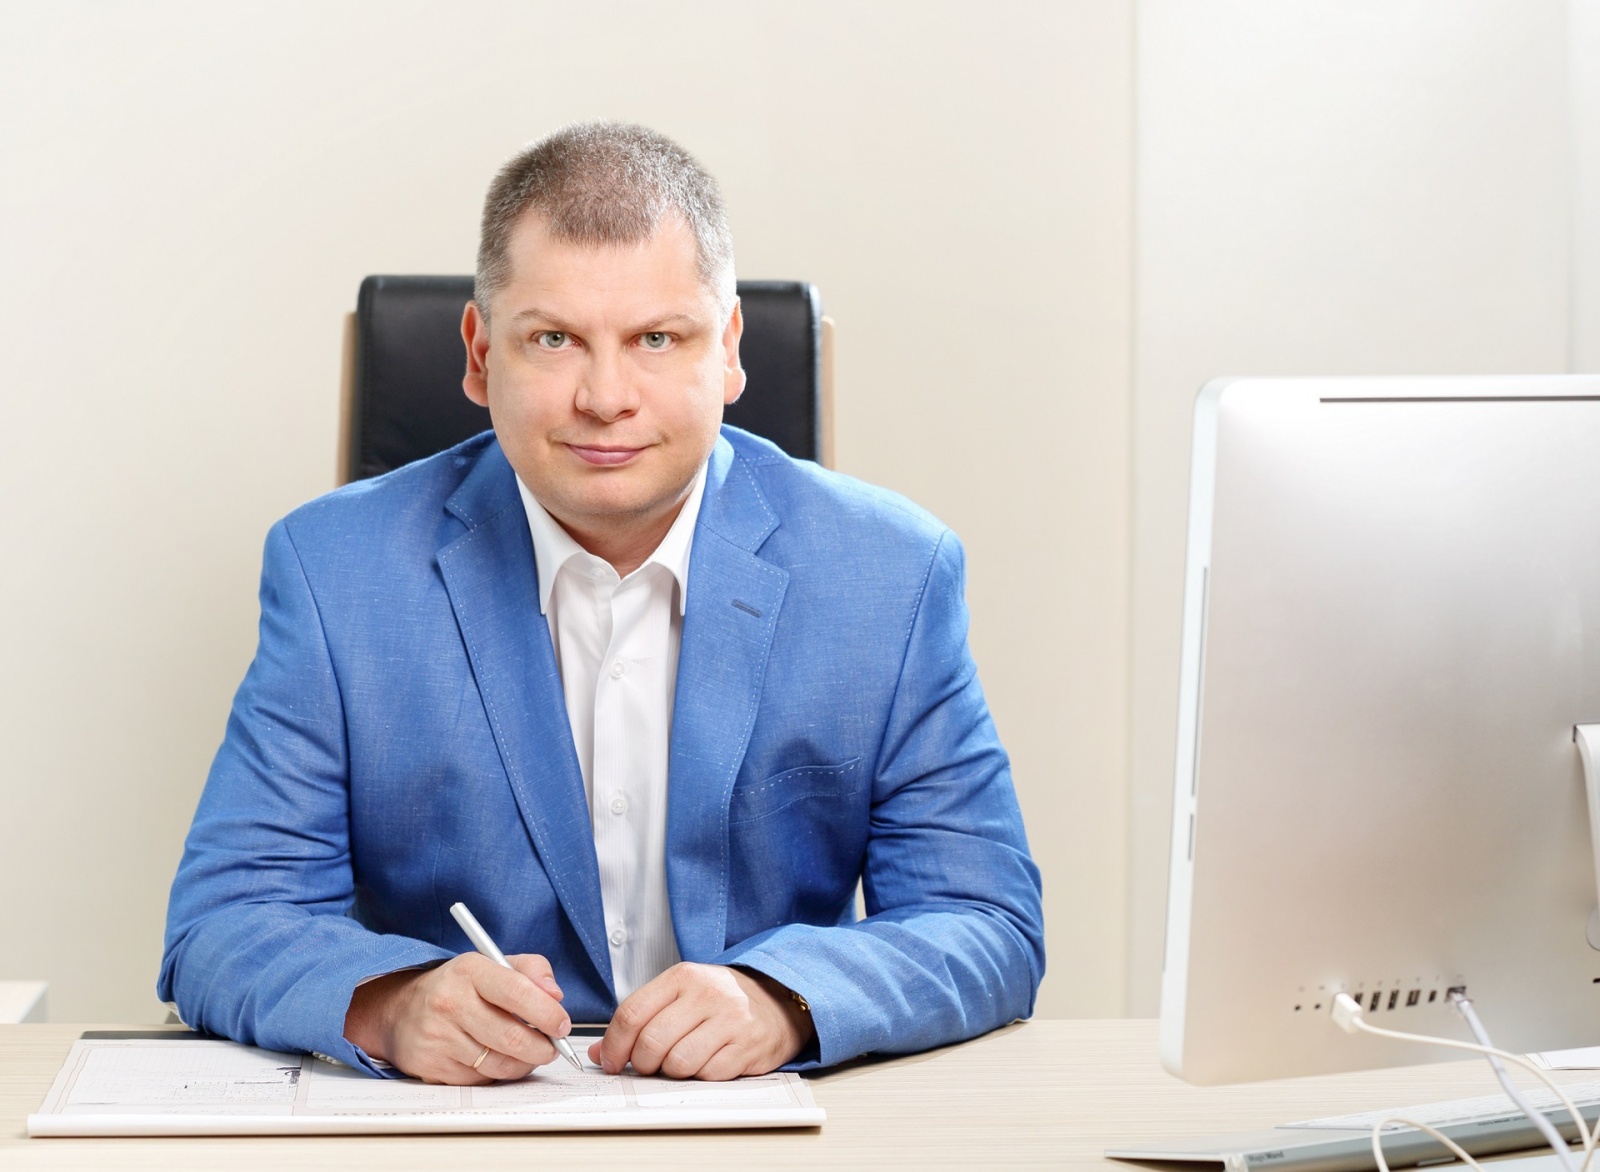 Андрей Воропаев, ТриЛан: «В 40 лет бизнес только начинается» - 1